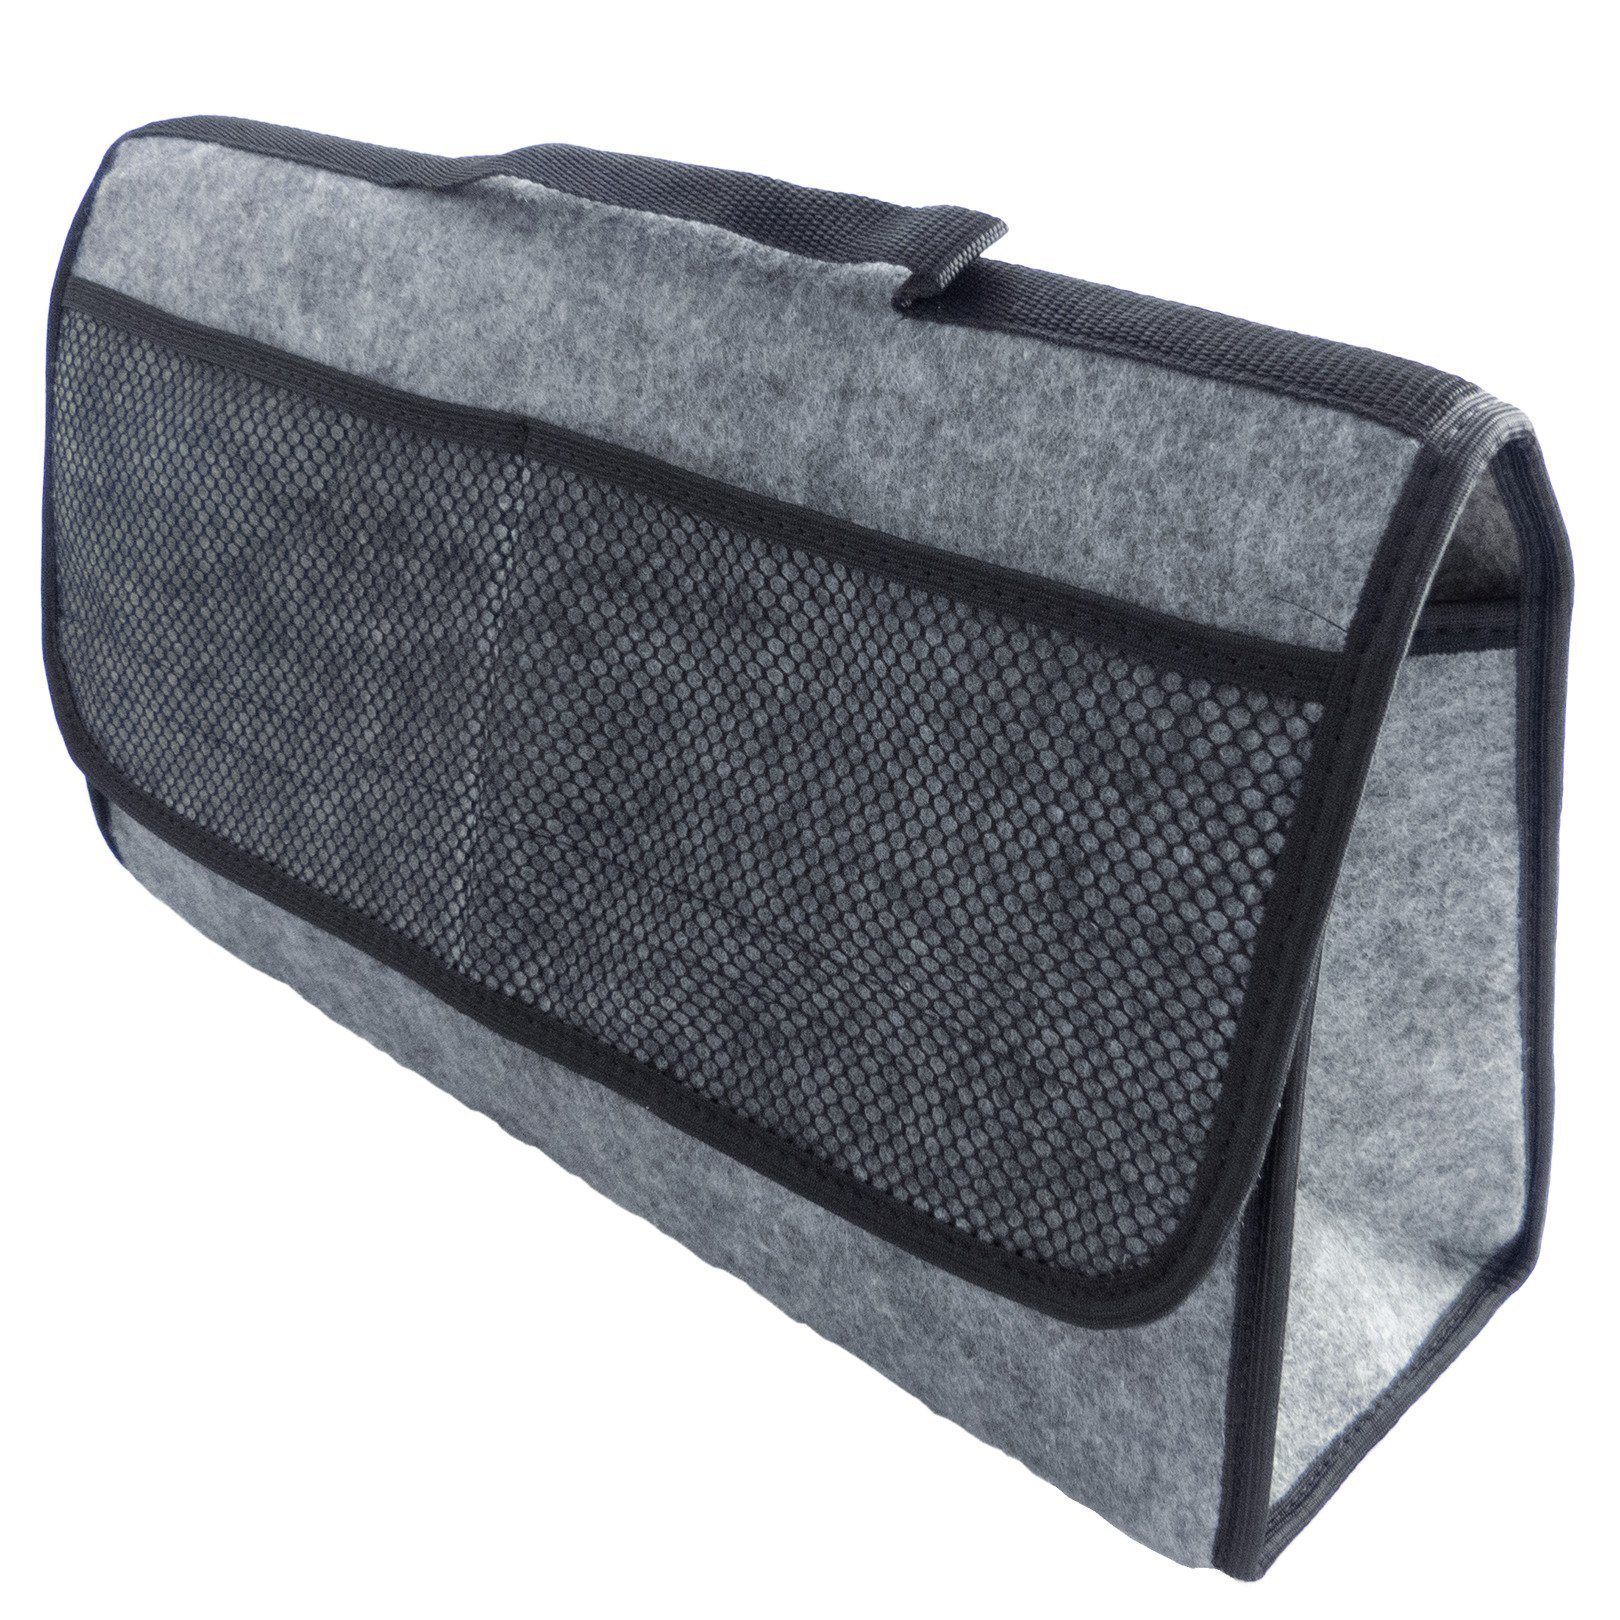 L & P Car Design Organizer Kofferraumtasche Auto in grau mit schwarzem Saum